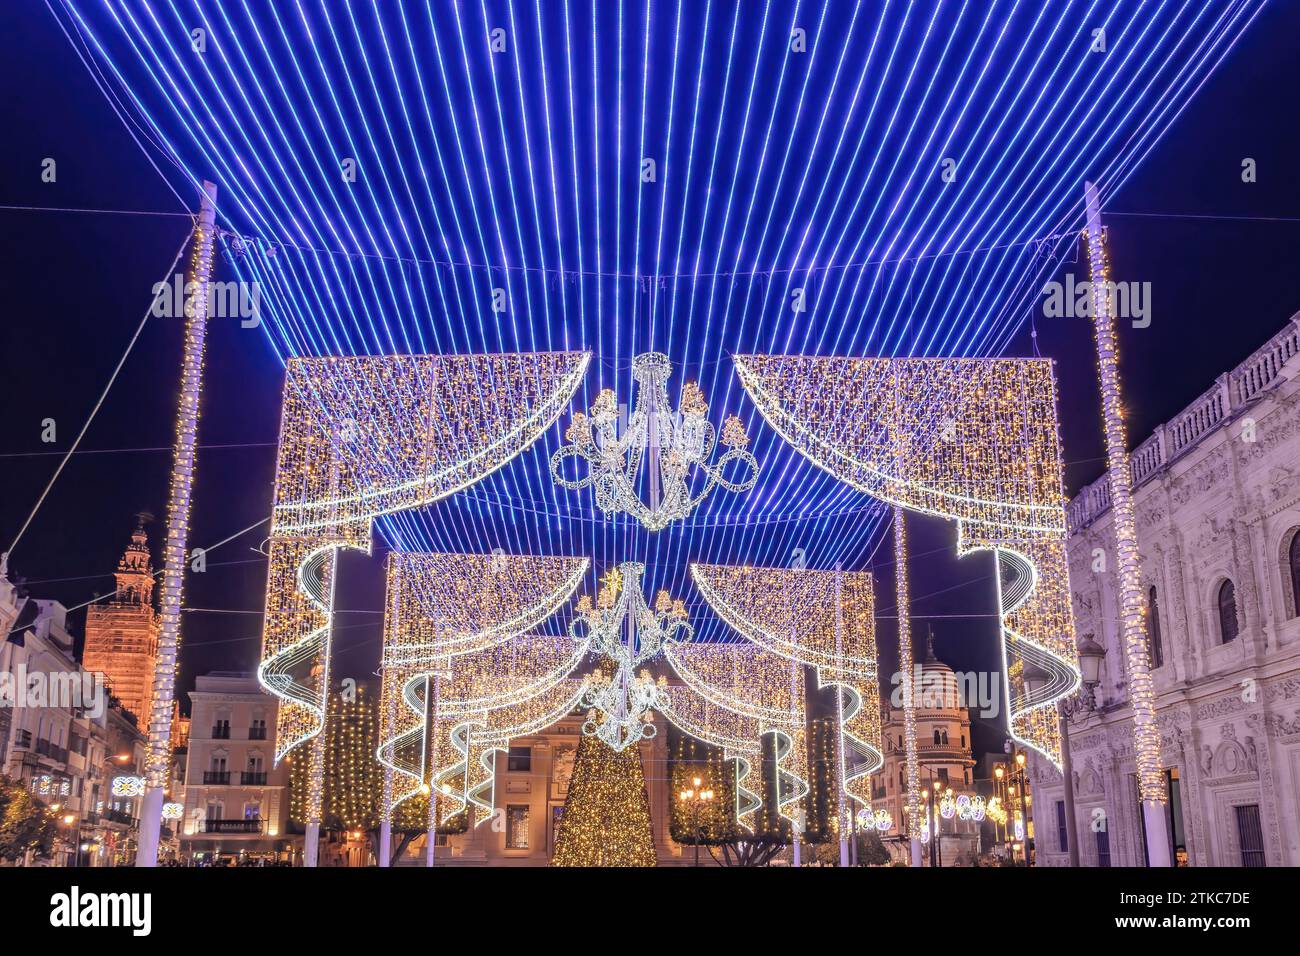 Decorazioni di luci natalizie nel municipio di Siviglia a forma di lampadari appesi a un soffitto blu fatto di luci natalizie, Andalusia, Spagna Foto Stock